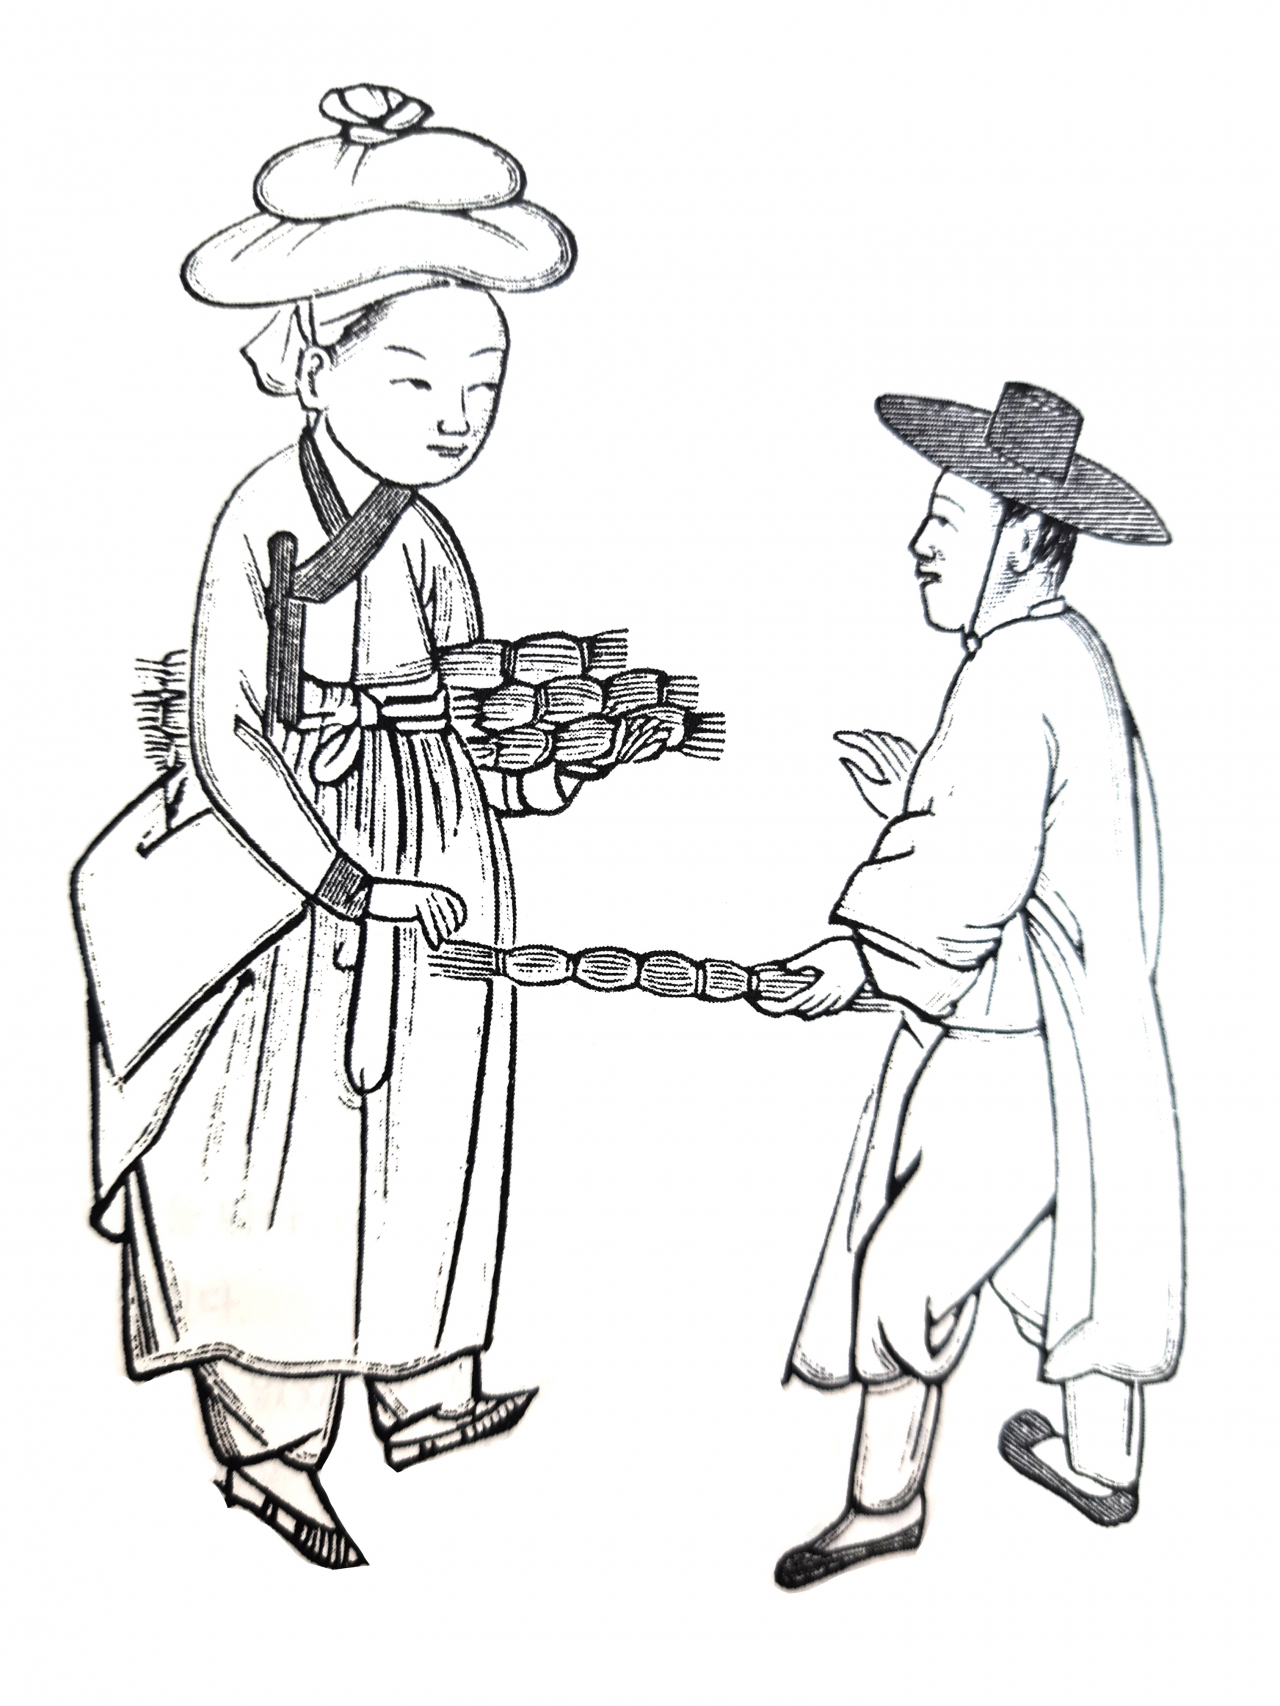 Egg-seller (Illustrations taken from the book 